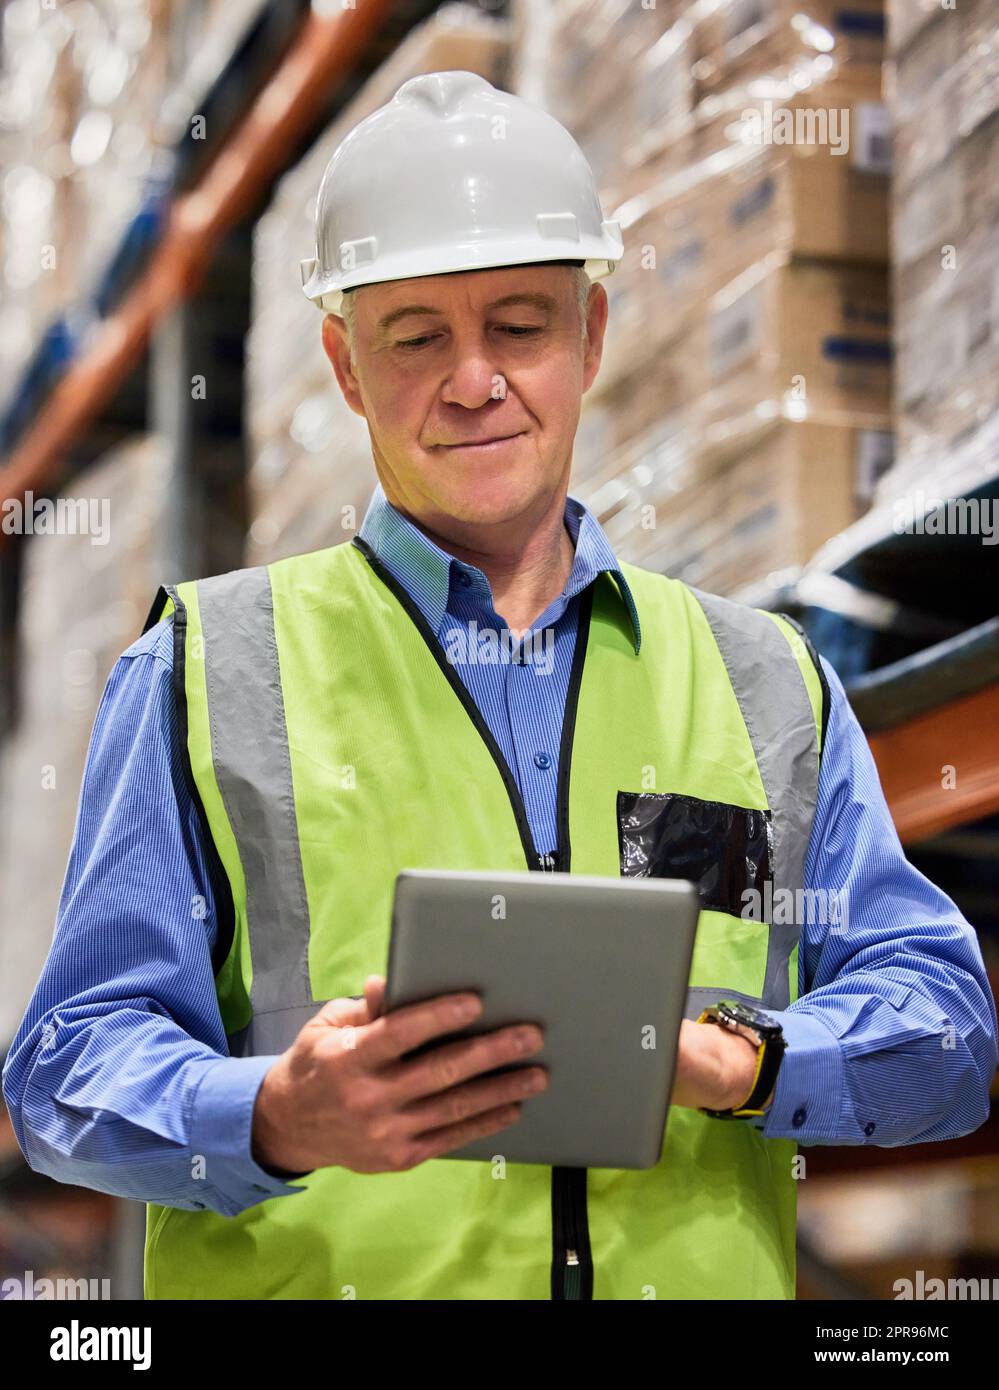 Ohne harte Arbeit kann es nicht gelingen. Ein reifer Mann, der ein digitales Tablet benutzt, während er in einem Lager arbeitet. Stockfoto